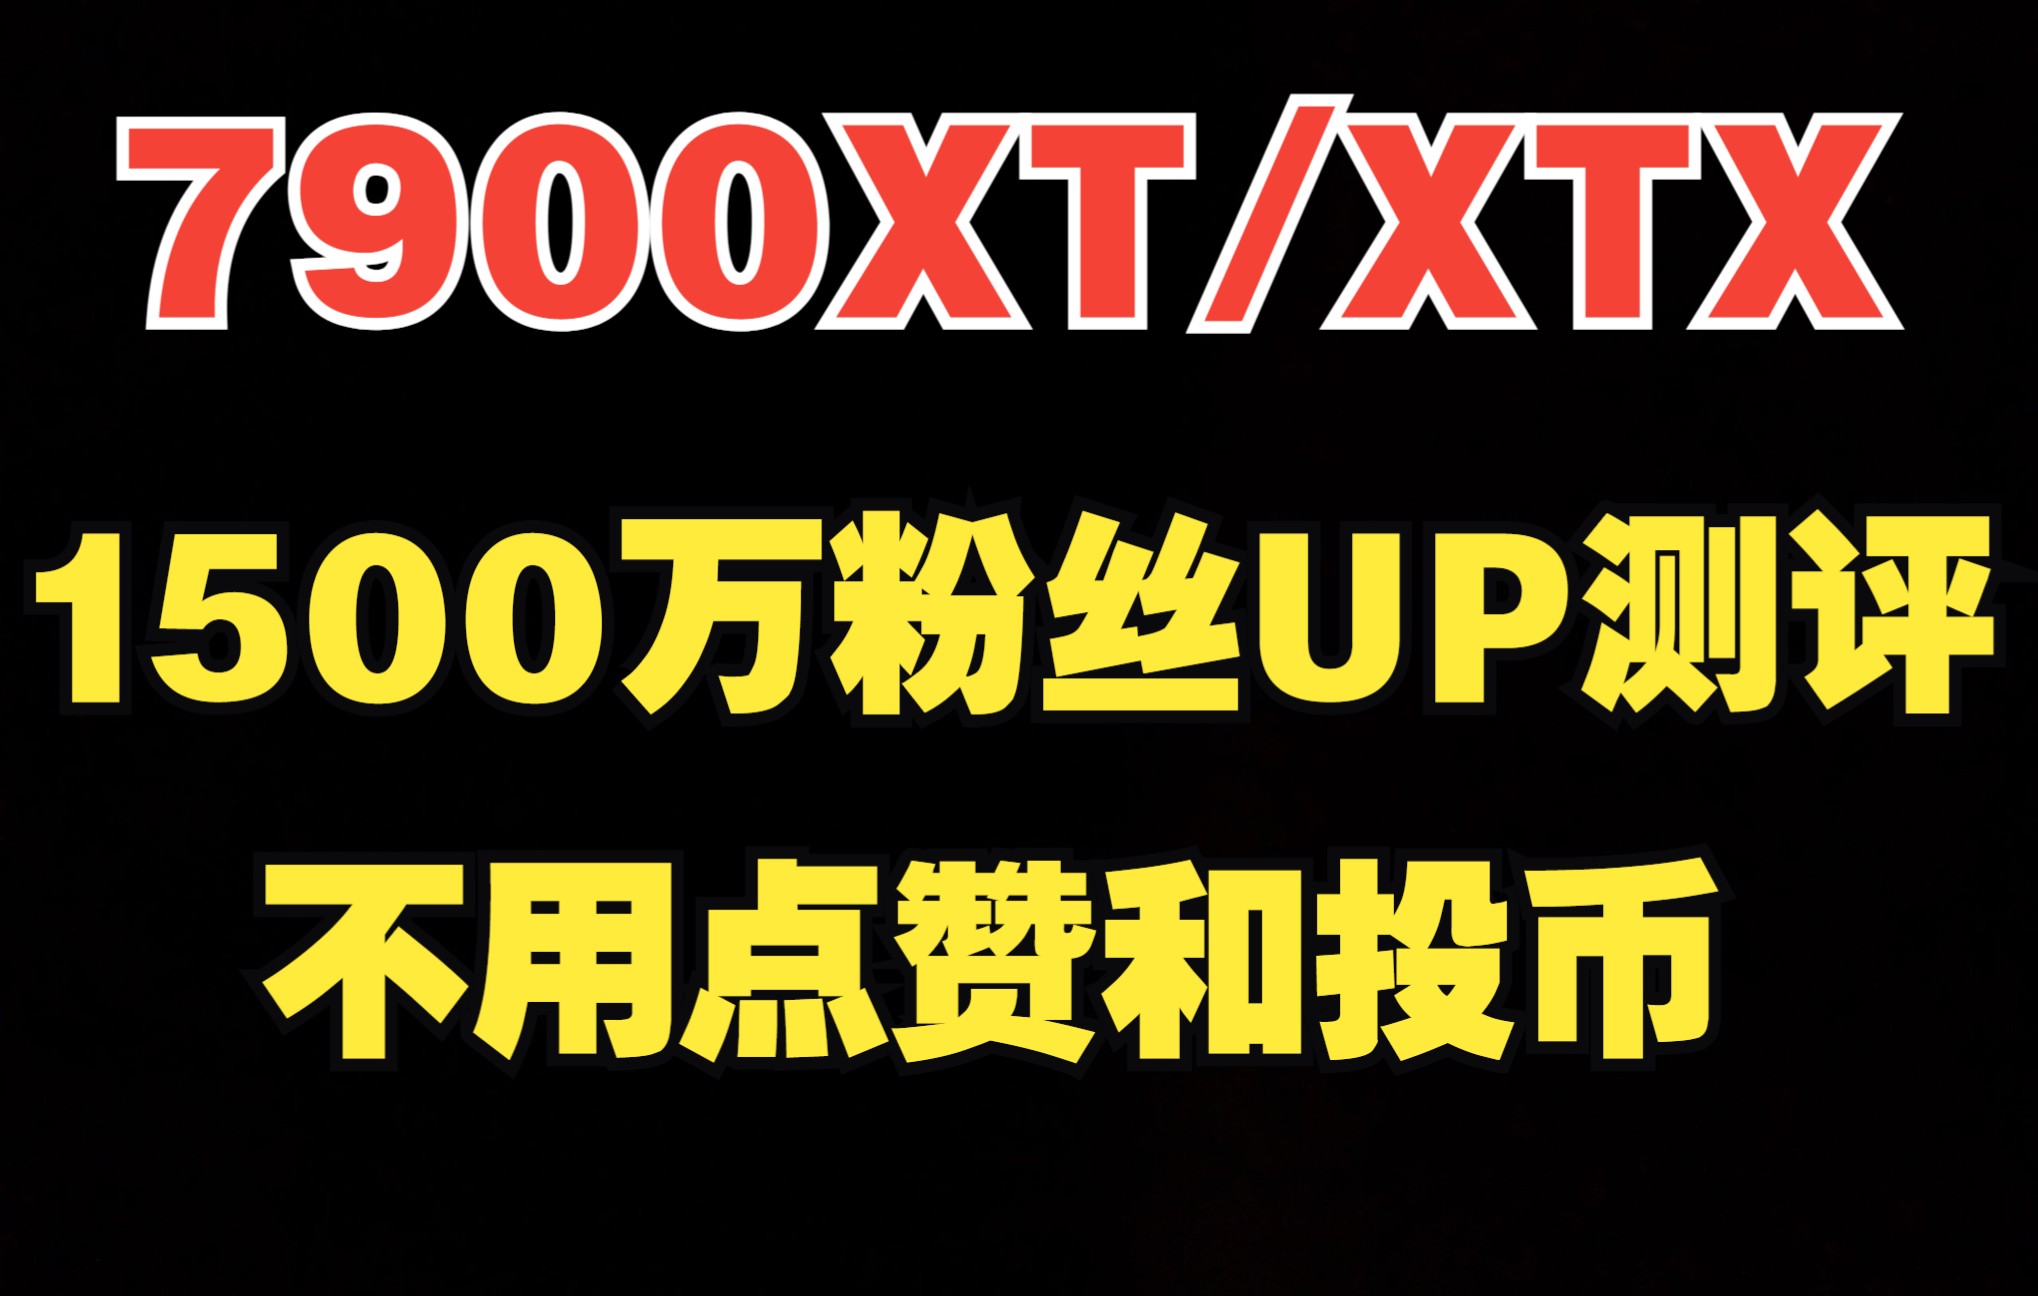 7900XT/XTX 国外1500万粉丝UP详细基准测试，包含专业软件测试对比